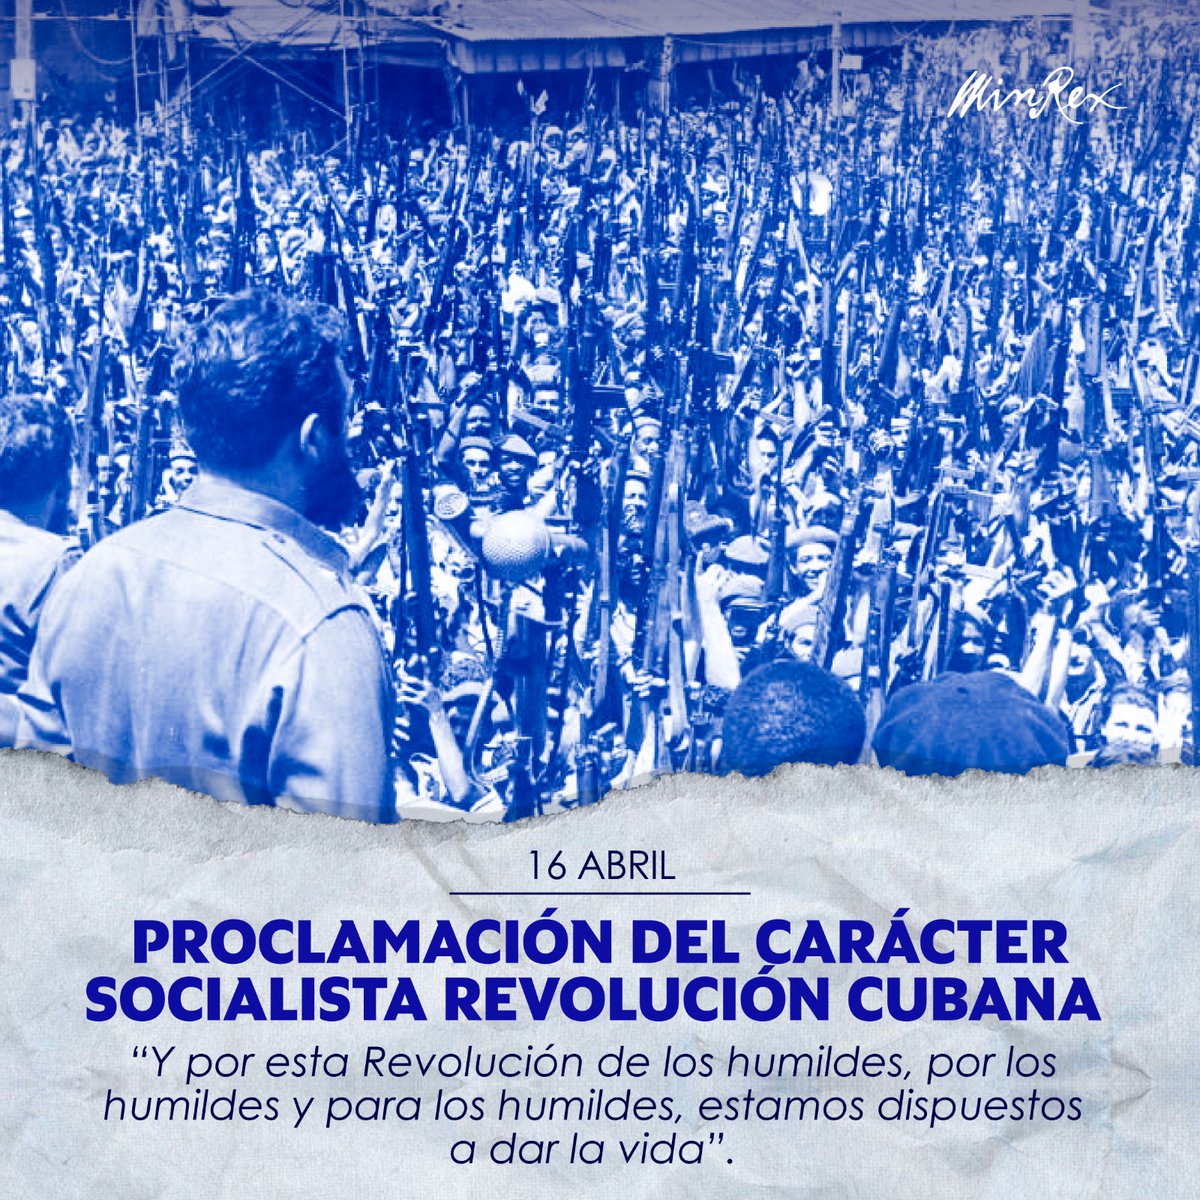 #FidelPorSiempe 'Compañeros obreros y campesinos, esta es la Revolución socialista y democrática de los humildes, con los humildes y para los humildes. Y por esta Revolución de los humildes, por los humildes y para los humildes, estamos dispuestos a dar la vida' @universidad_uci